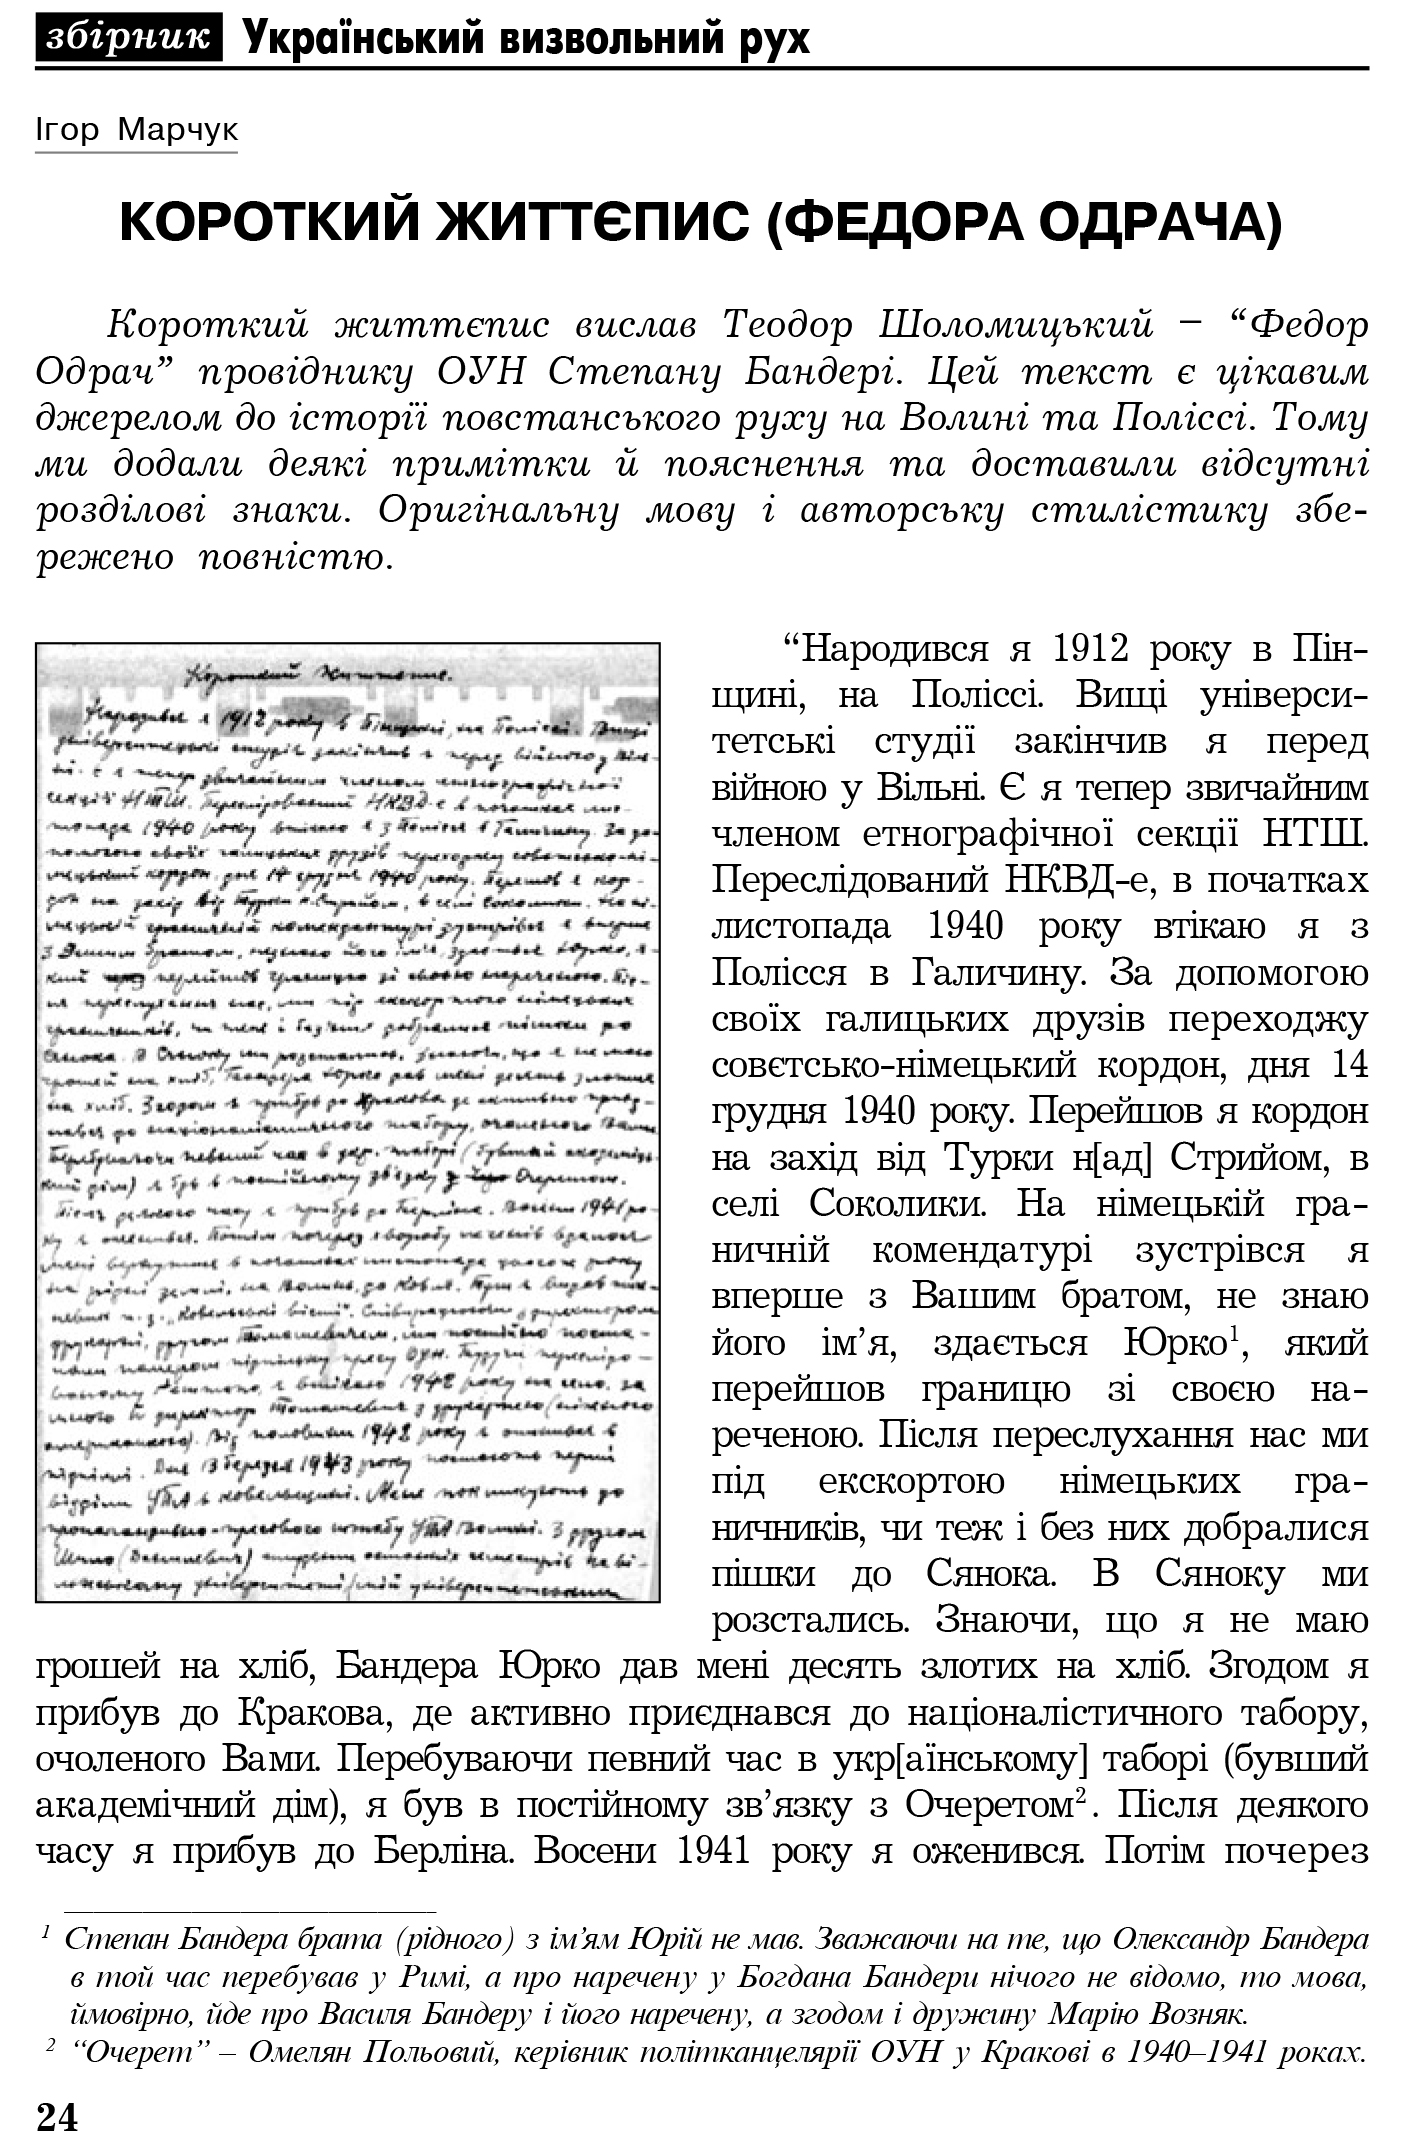 Український визвольний рух №4, ст. 24 - 27